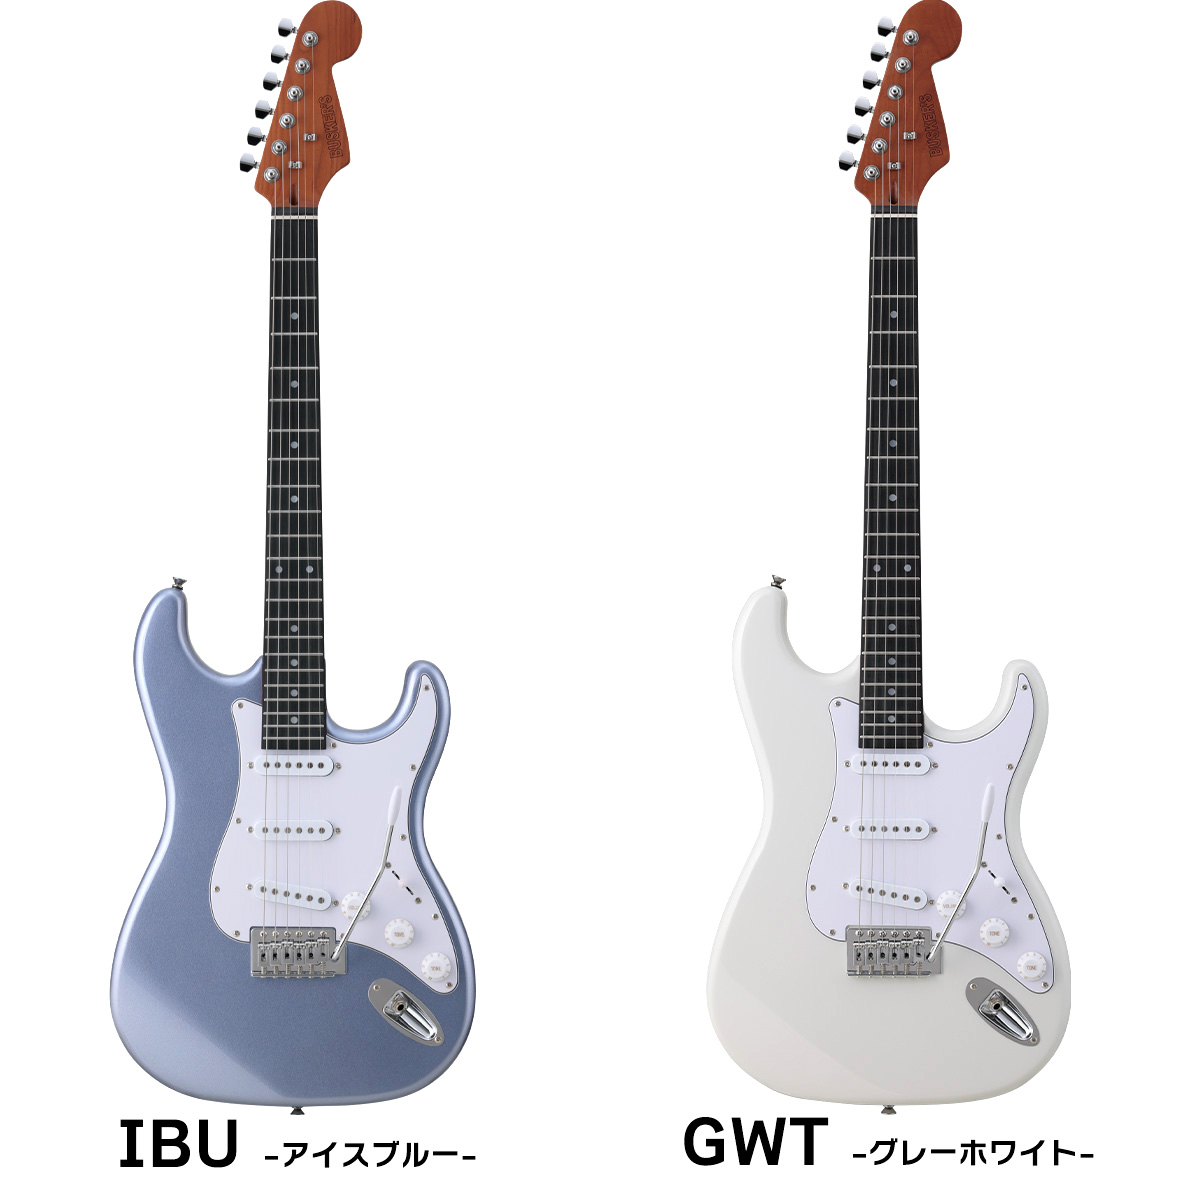 BUSKER'S BST-Standard エレキギター初心者12点セット【ミニアンプ付き 